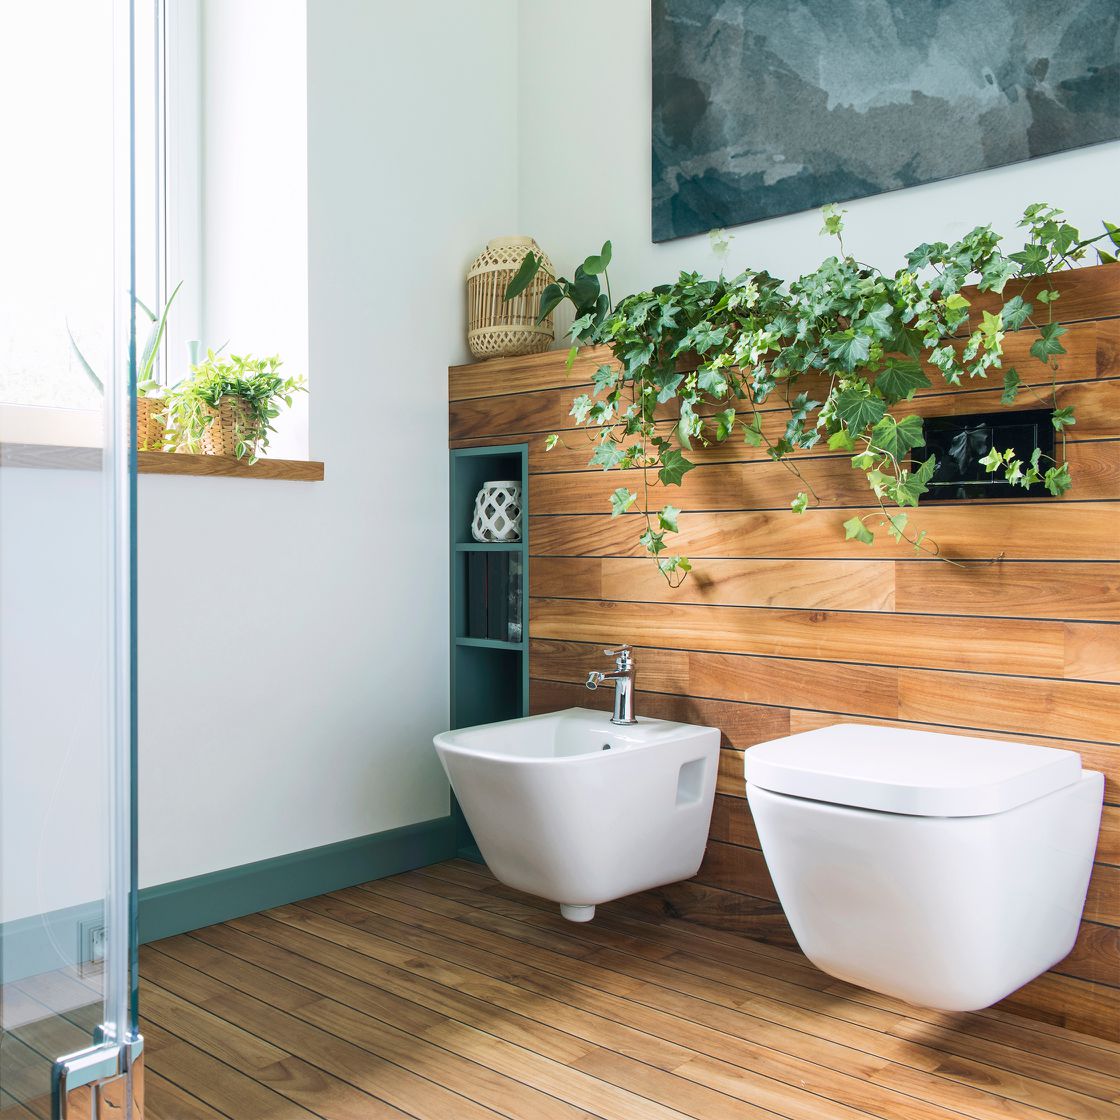 Badezimmer im Natur-Look mit Holz und Pflanzen